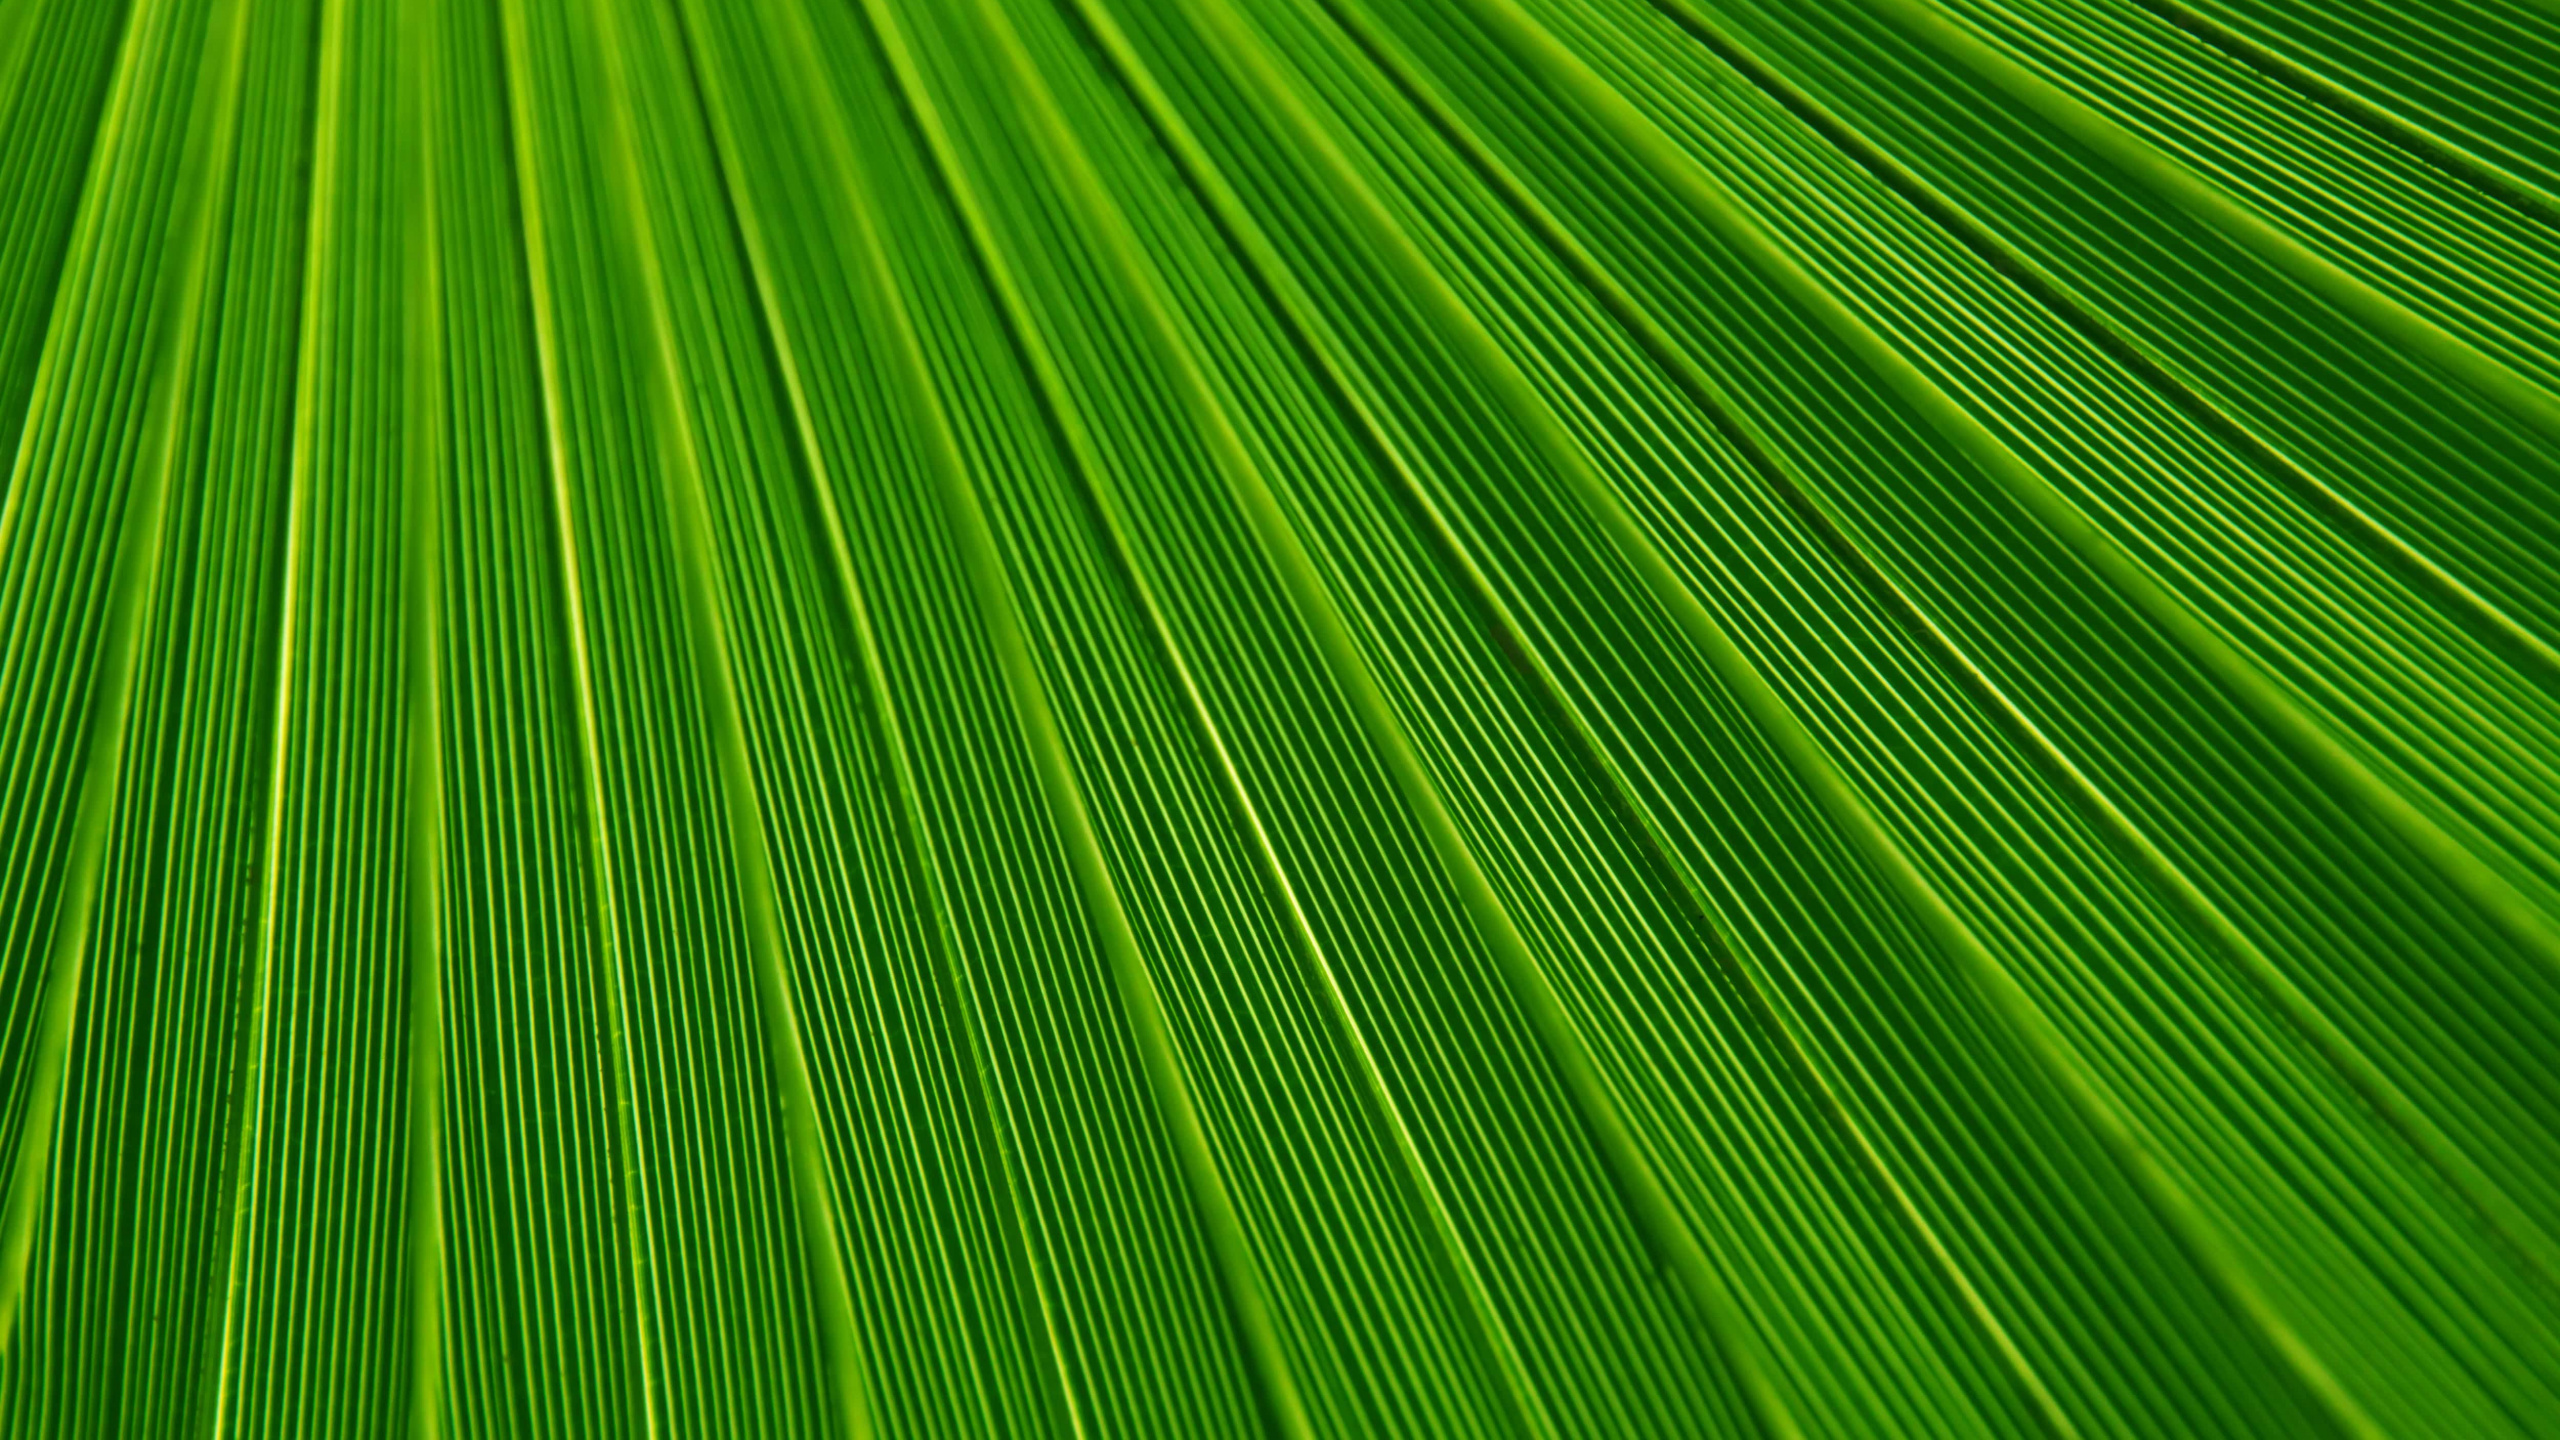 棕榈树, 纹理, 绿色的, 草, 草家庭 壁纸 2560x1440 允许